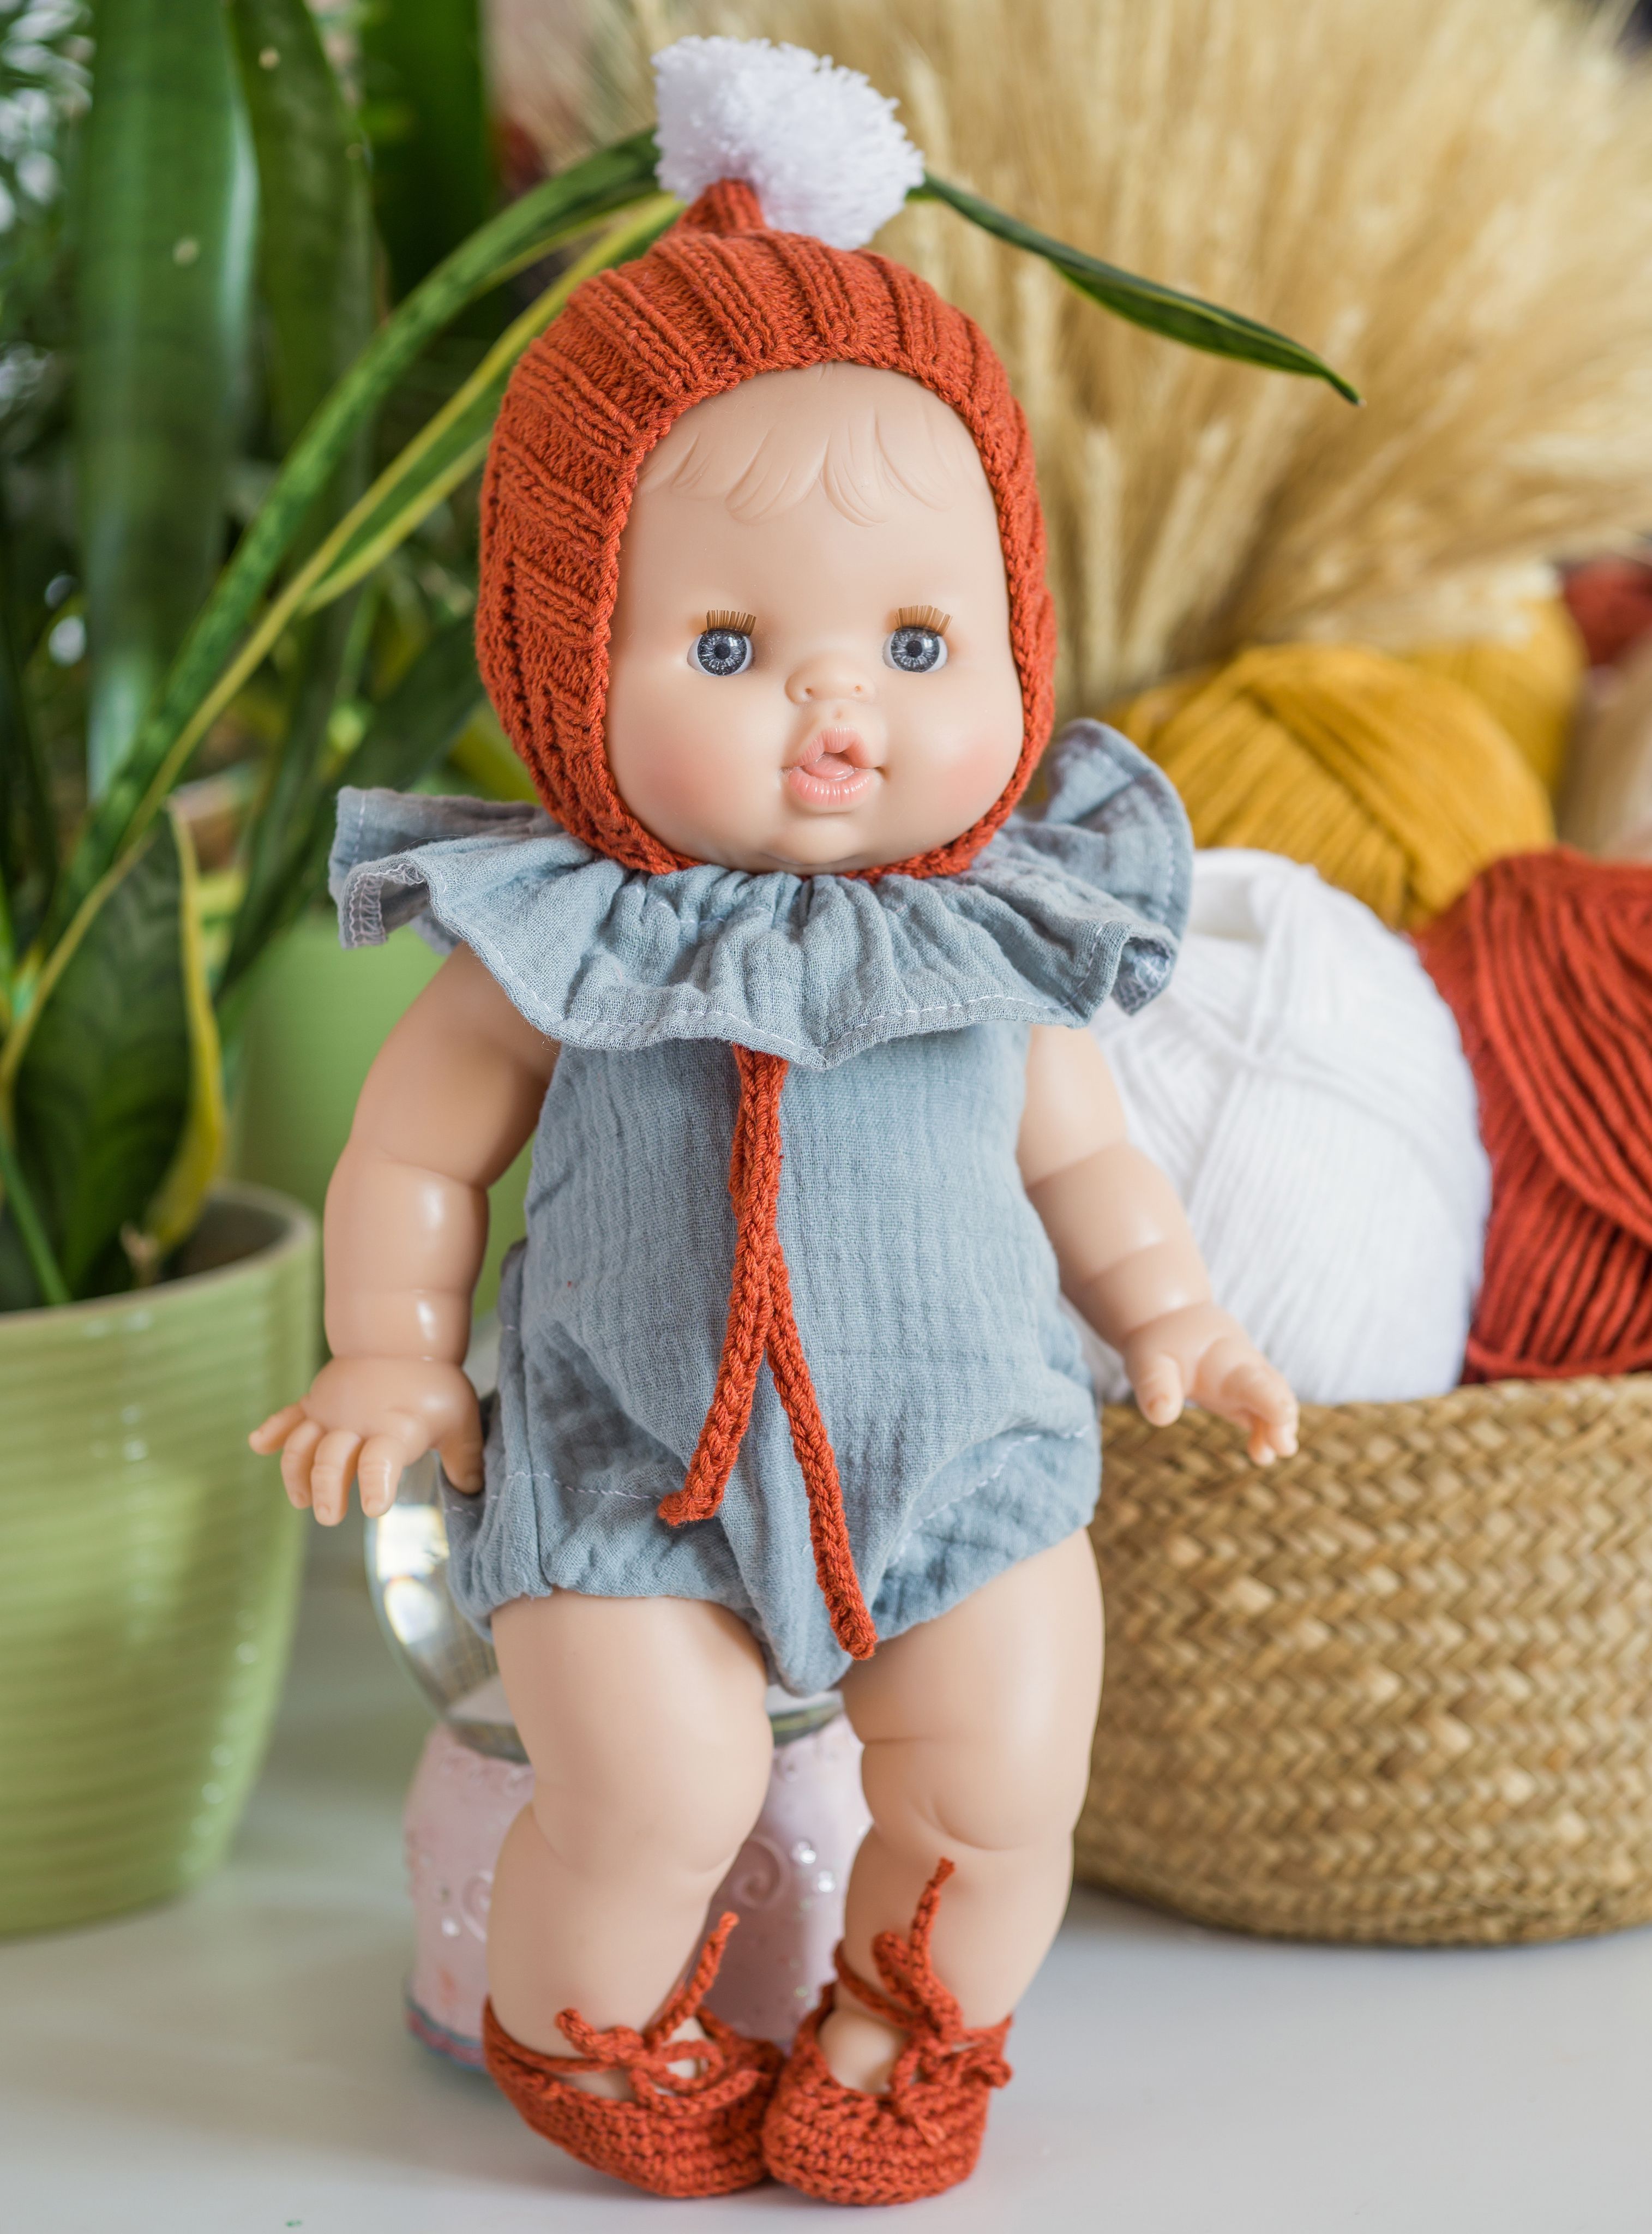 Одежда для куклы Беби Бон: вязаный жакет, шапочка и носочки